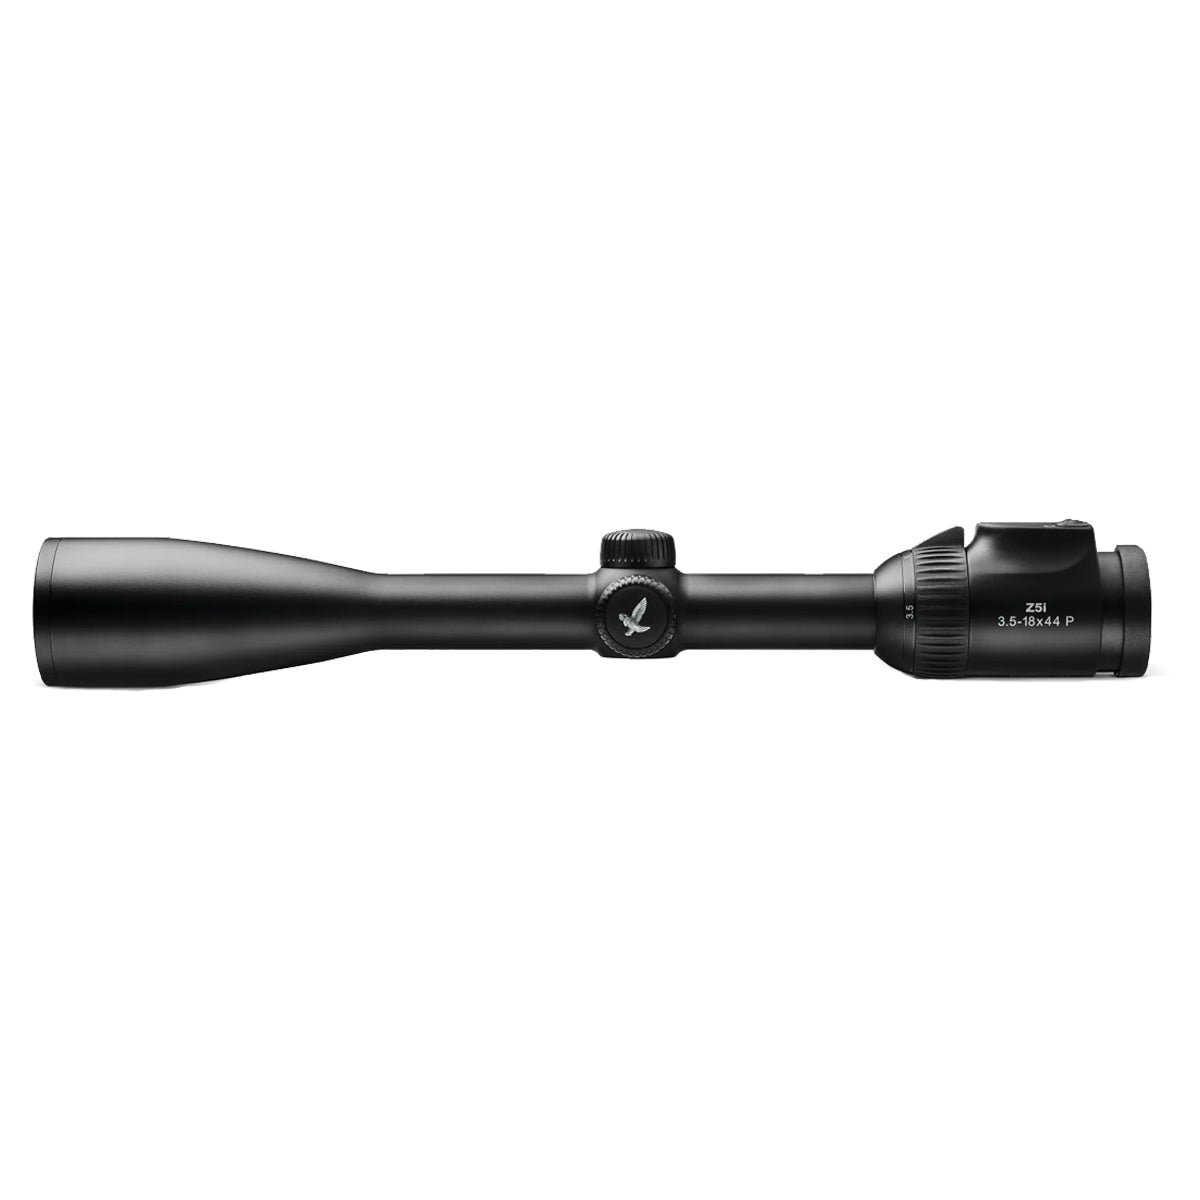 Swarovski Z5i 3.5-18x44 - BT-4W-I Riflescope in  by GOHUNT | Swarovski Optik - GOHUNT Shop